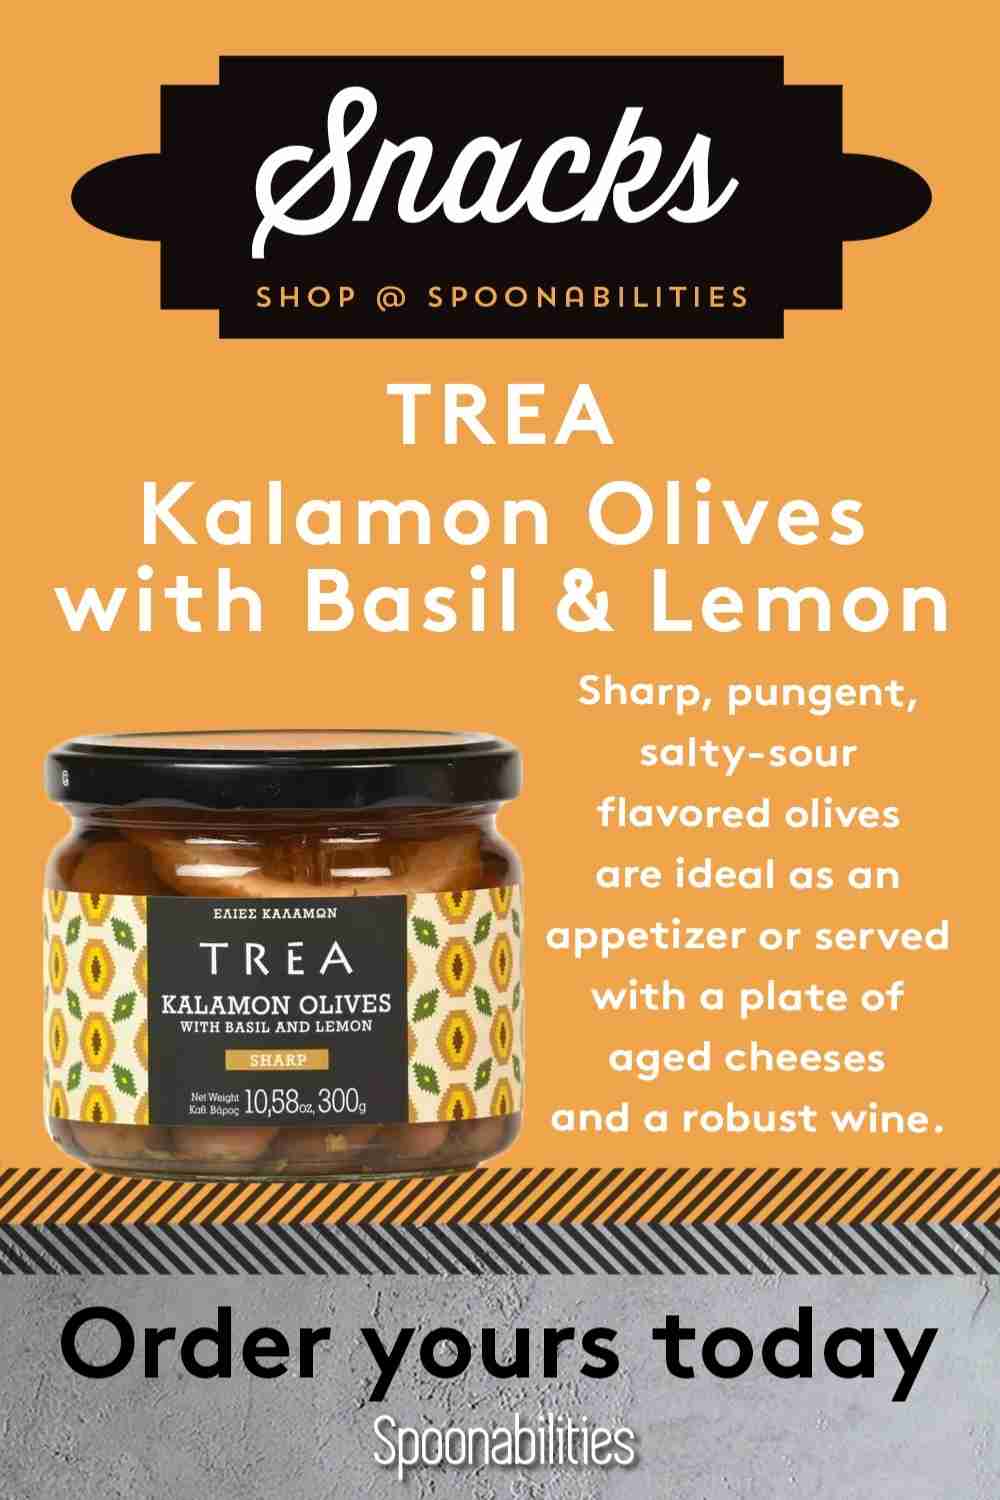 TREA Kalamon Olives with Basil & Lemon (2-pack)